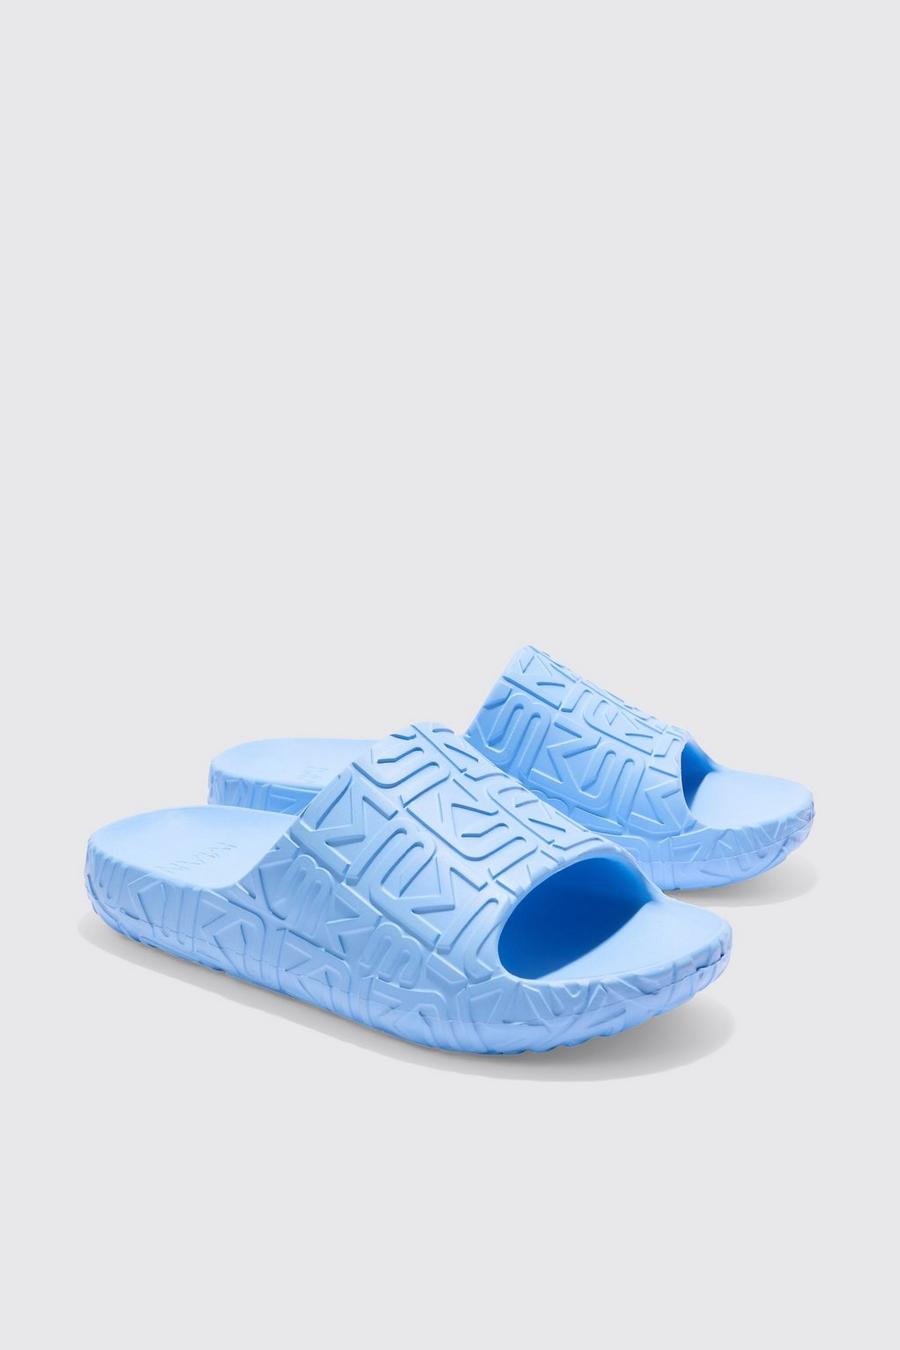 Sandalias moldeadas BM infladas, Light blue